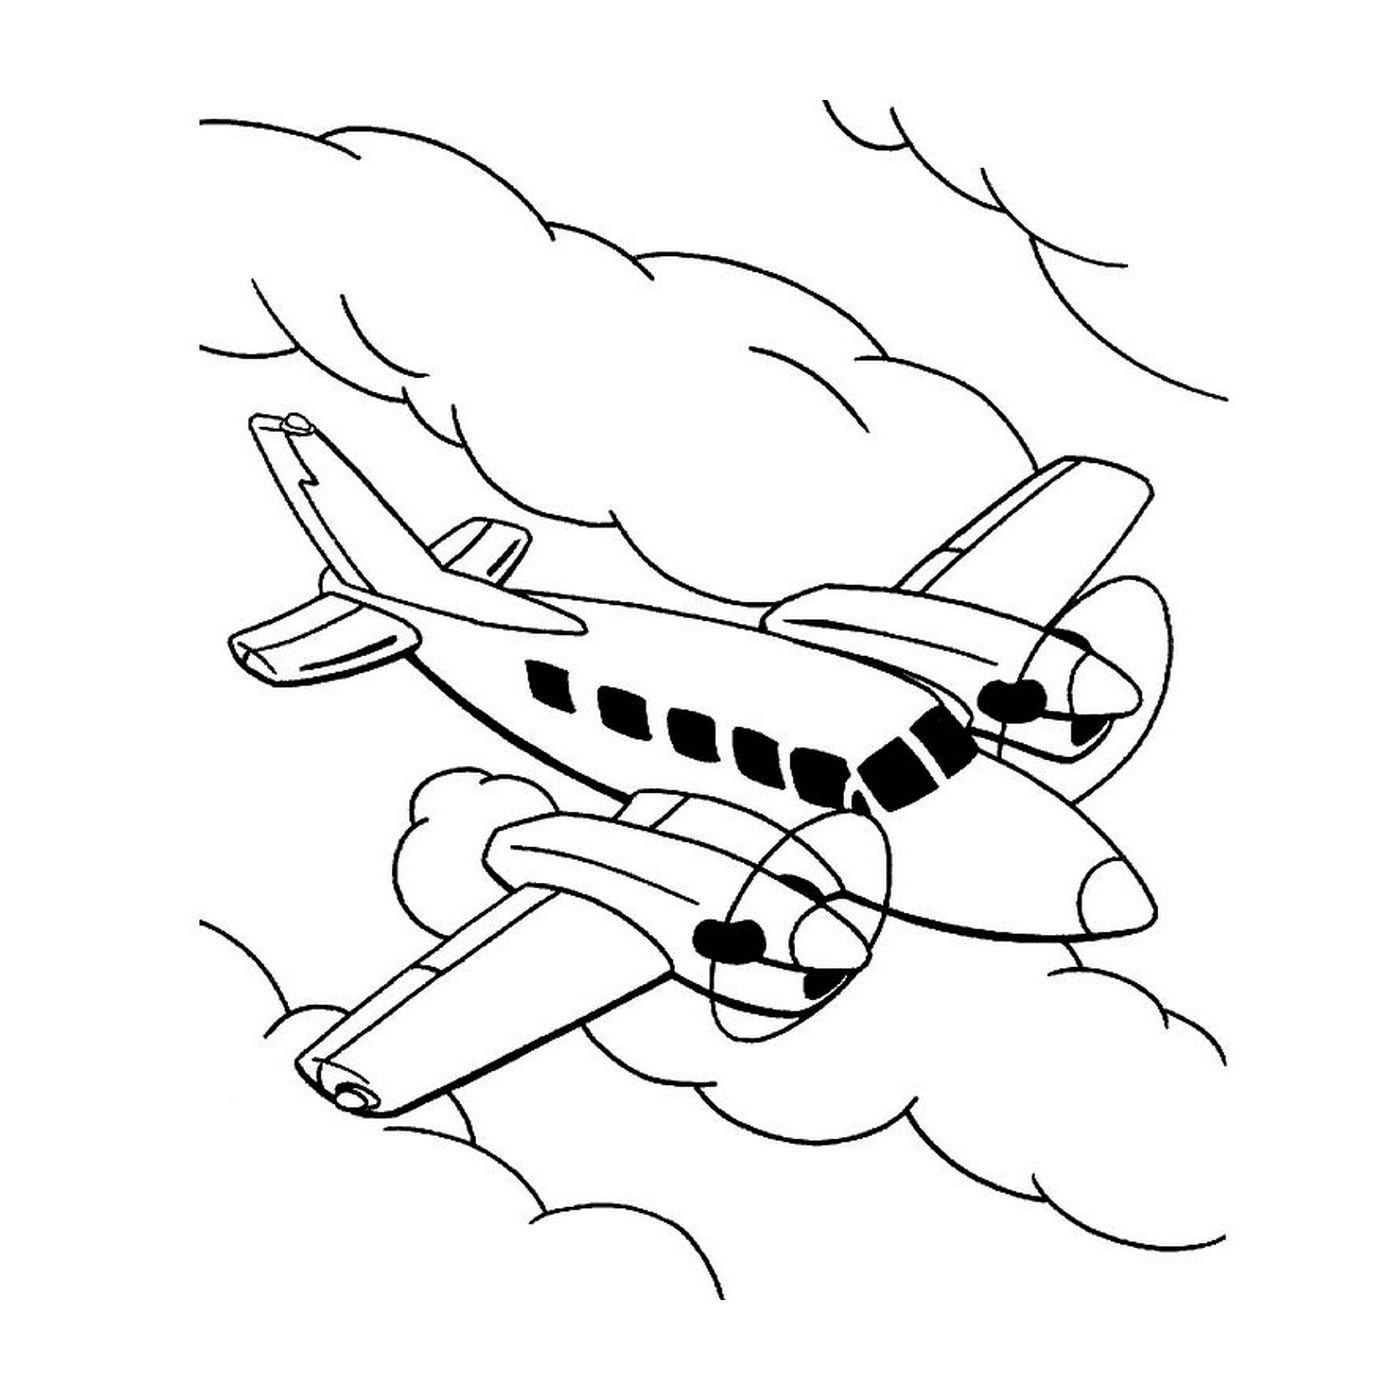   Un avion de ligne vole dans le ciel parmi les nuages 